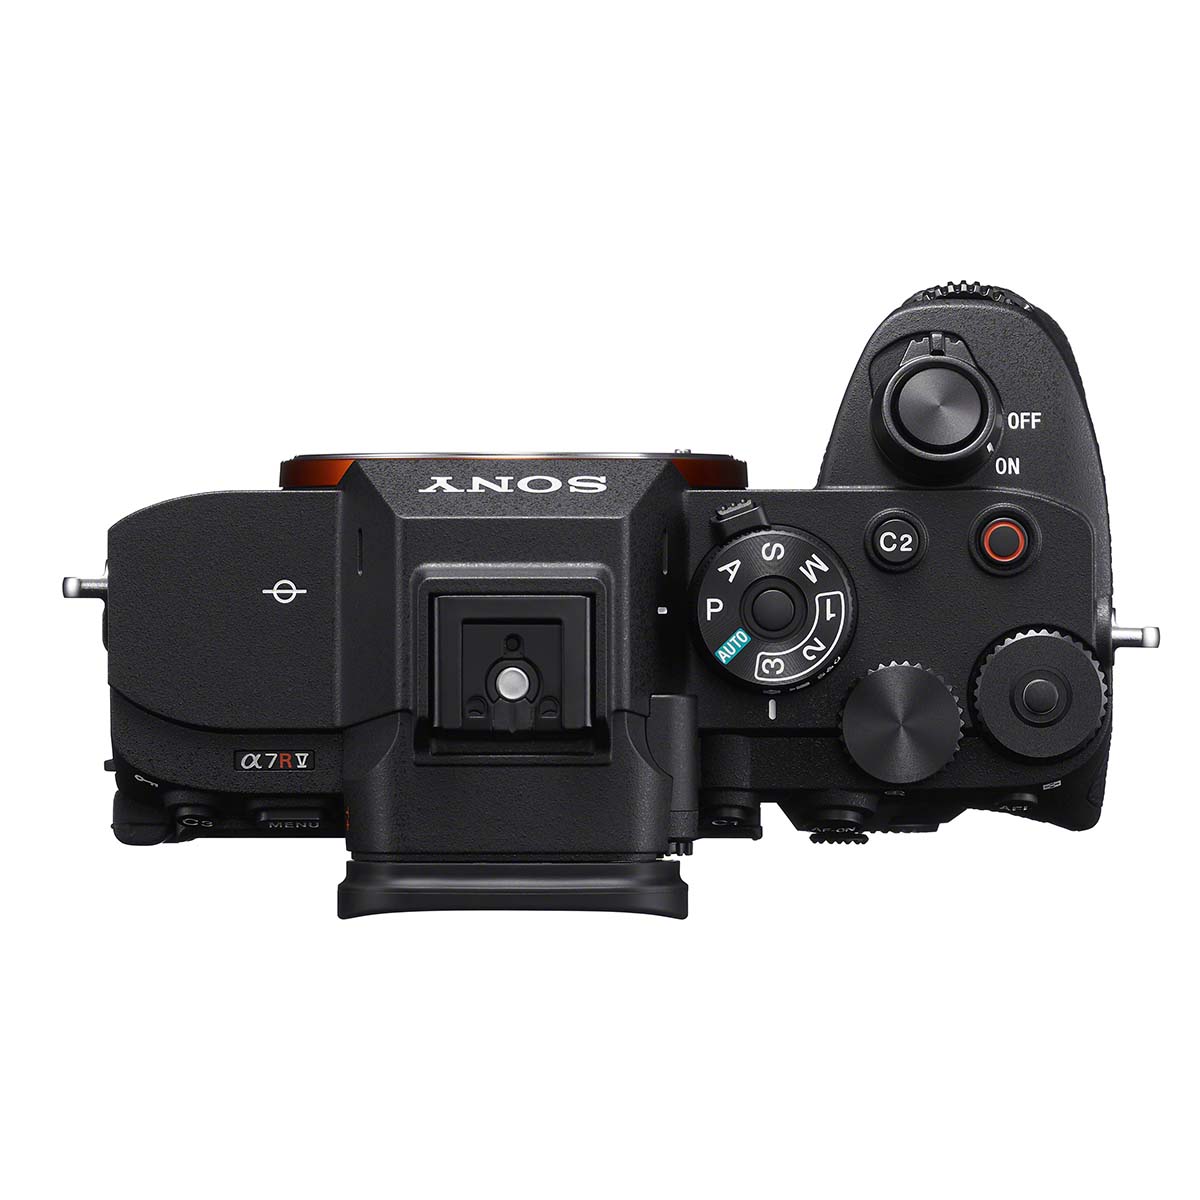 Sony Alpha a7R V Digital Camera Body